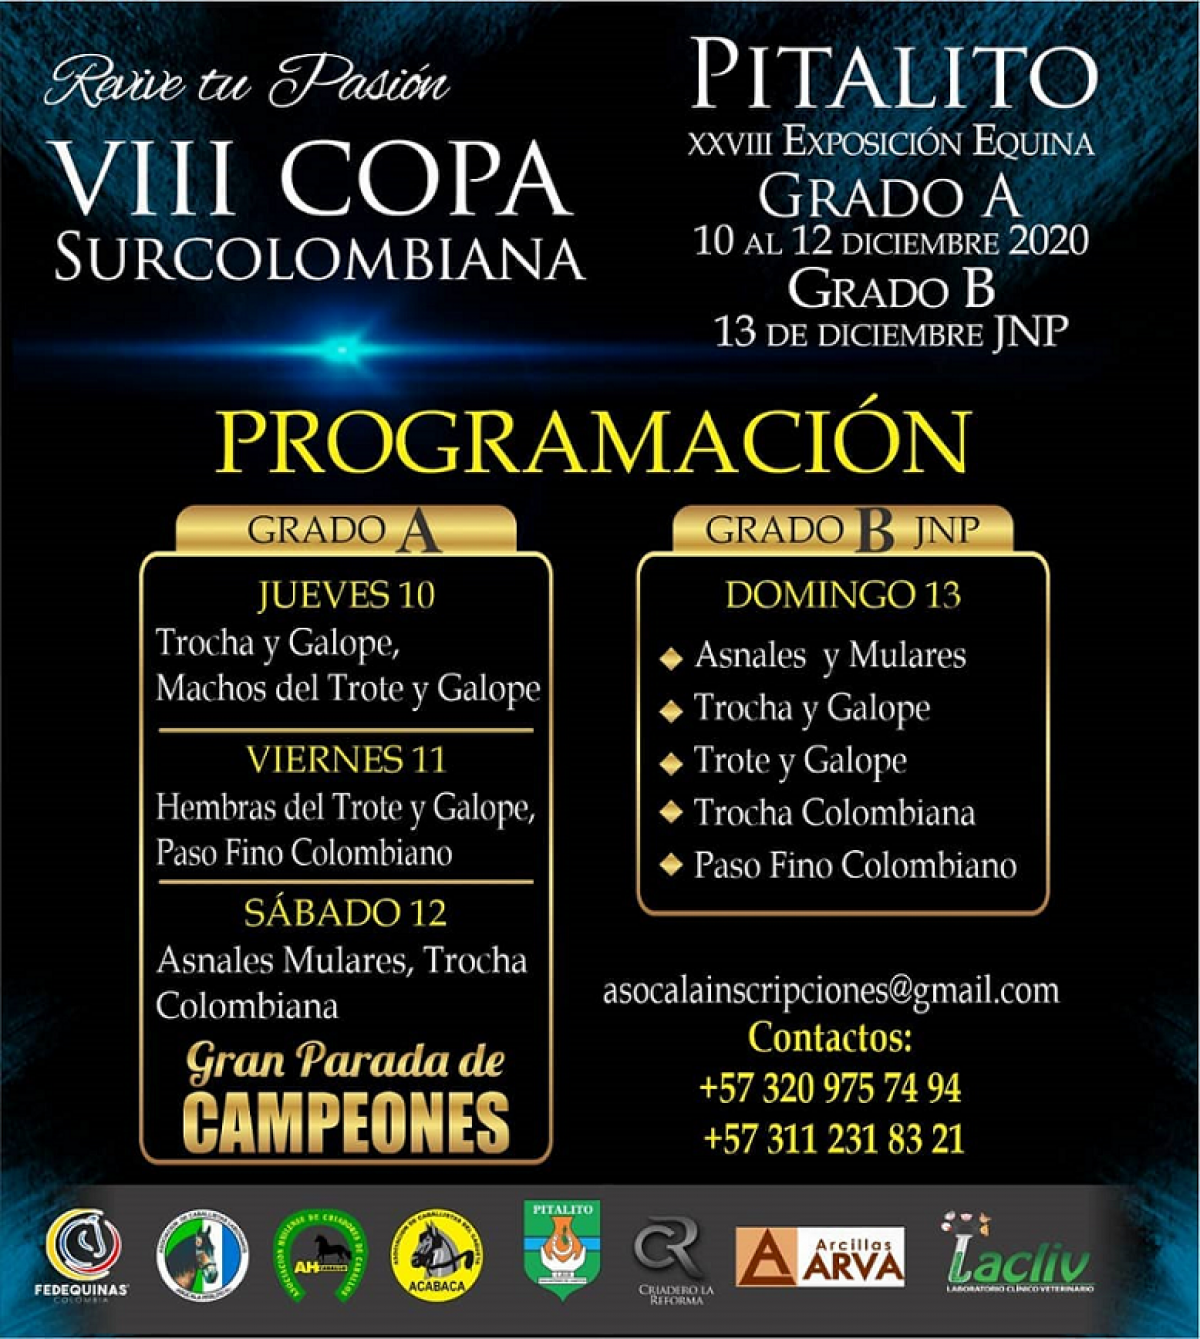 Programación VIII COPA SURCOLOMBIANA - Pitalito Grado A 